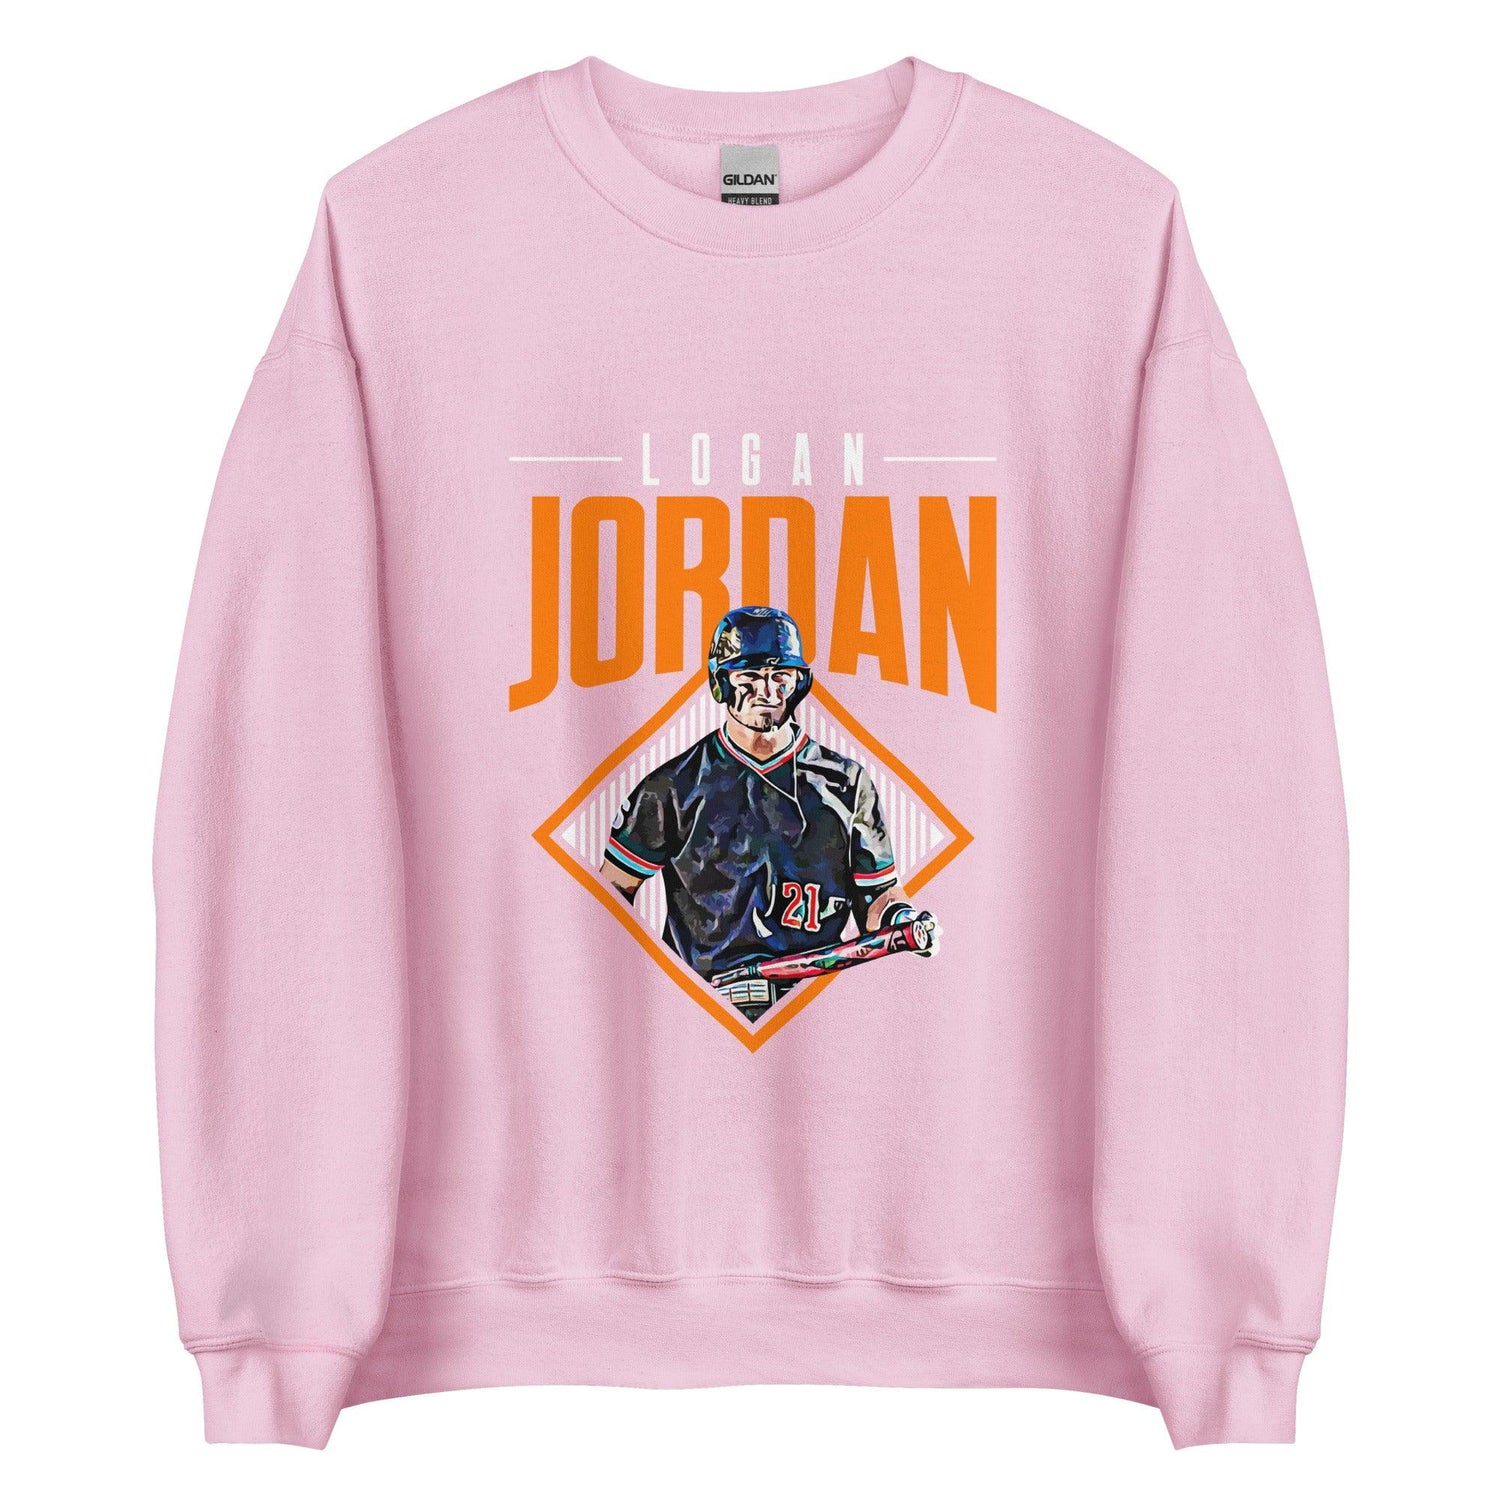 Logan Jordan "Grand Slam" Sweatshirt - Fan Arch